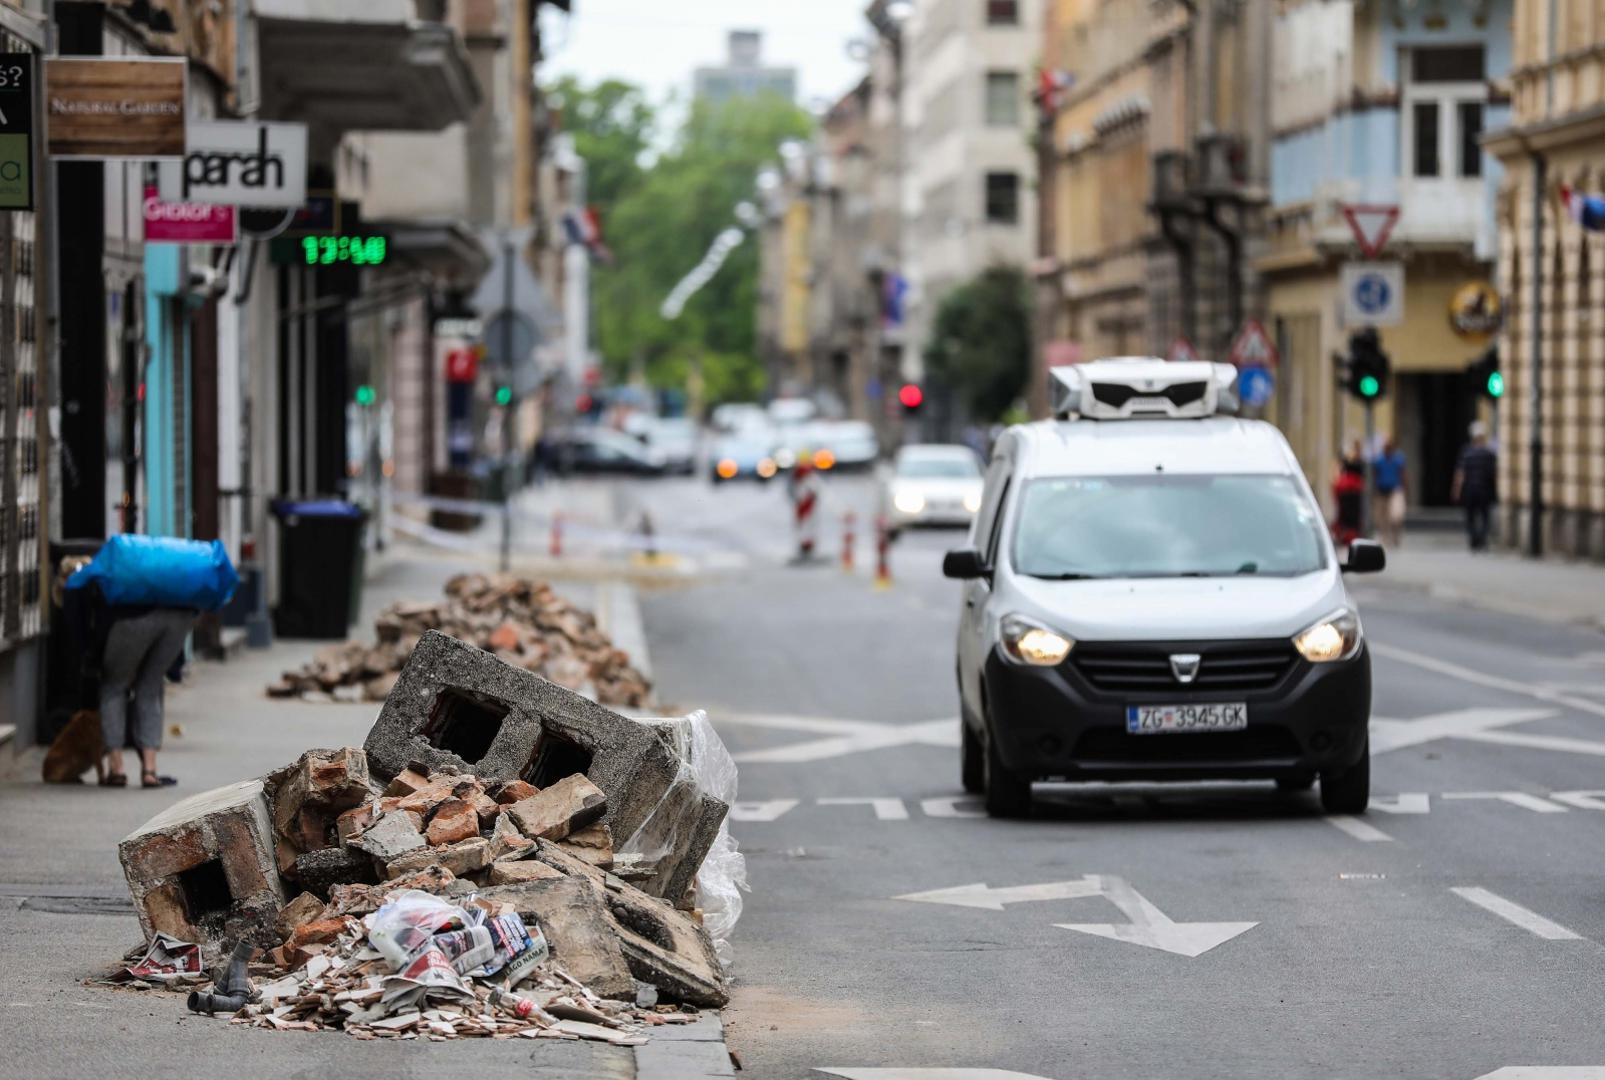 10.05.2020., Zagreb - Ostaci dimnjaka sa stambene zgrade u centru grada nakon potresa u Zagrebu 
Photo: Jurica Galoic/PIXSELL